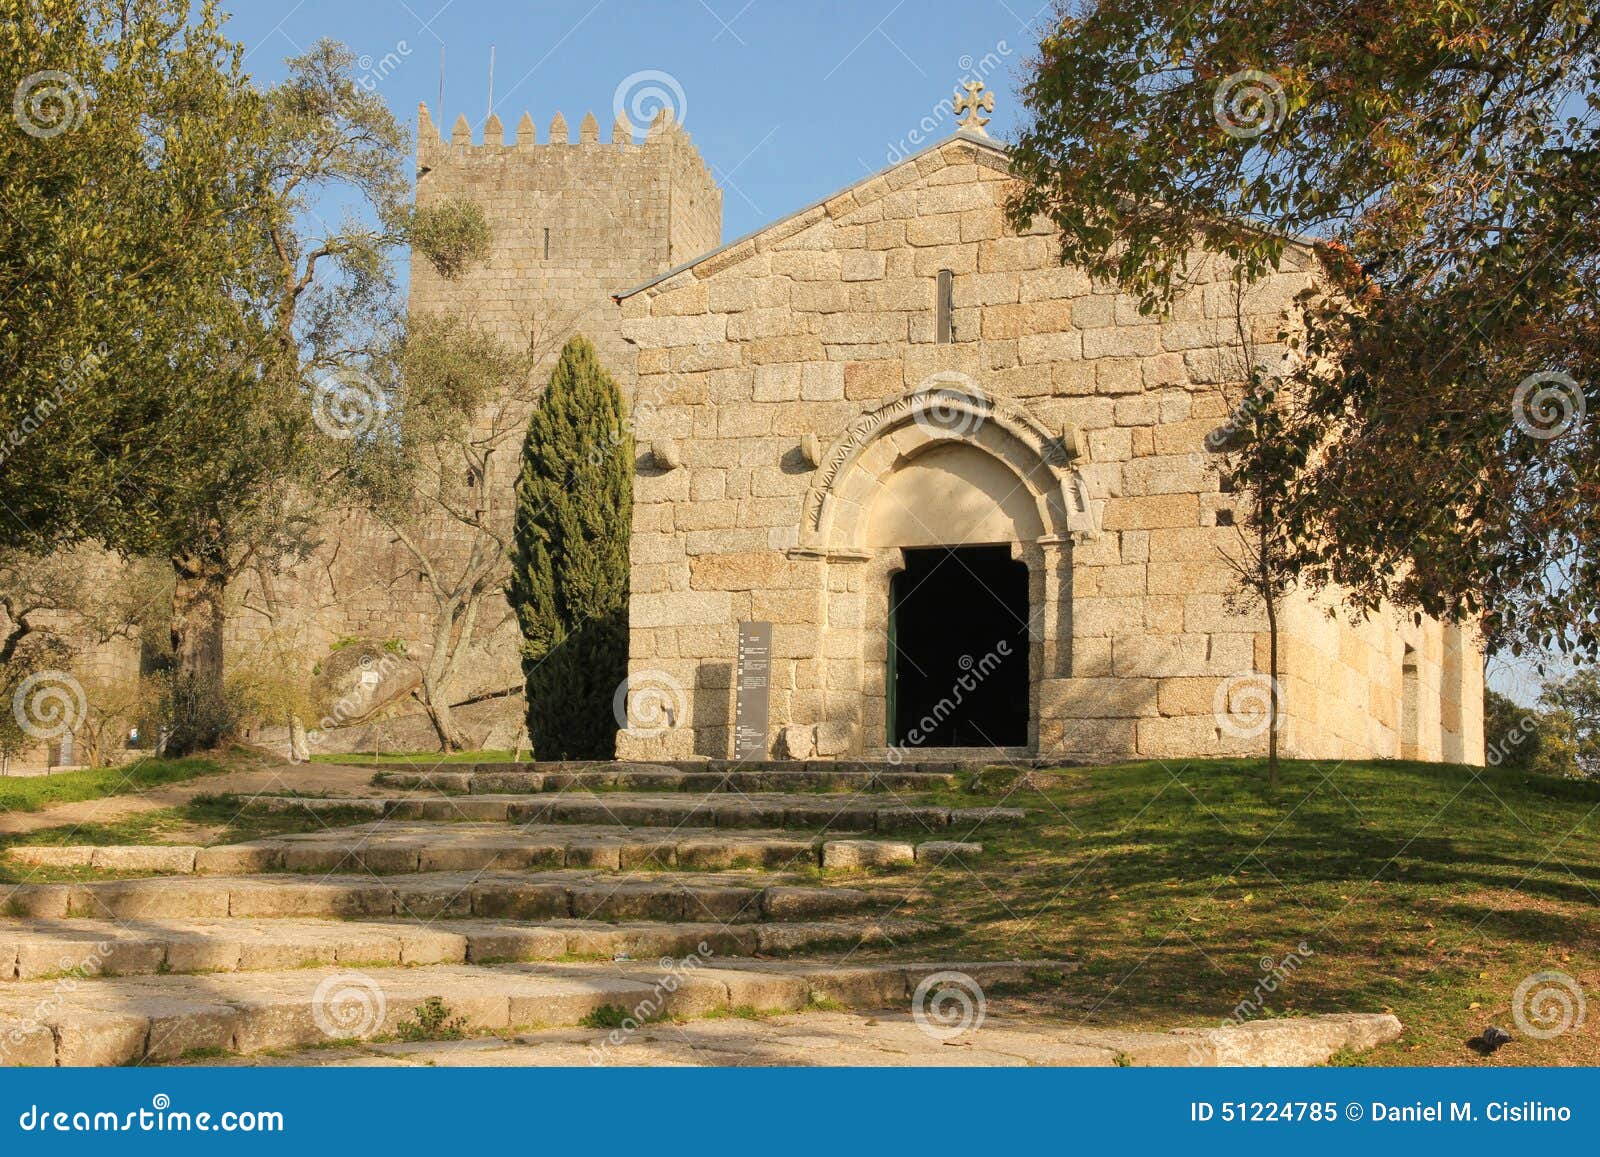 church of sao miguel do castelo. guimaraes. portugal